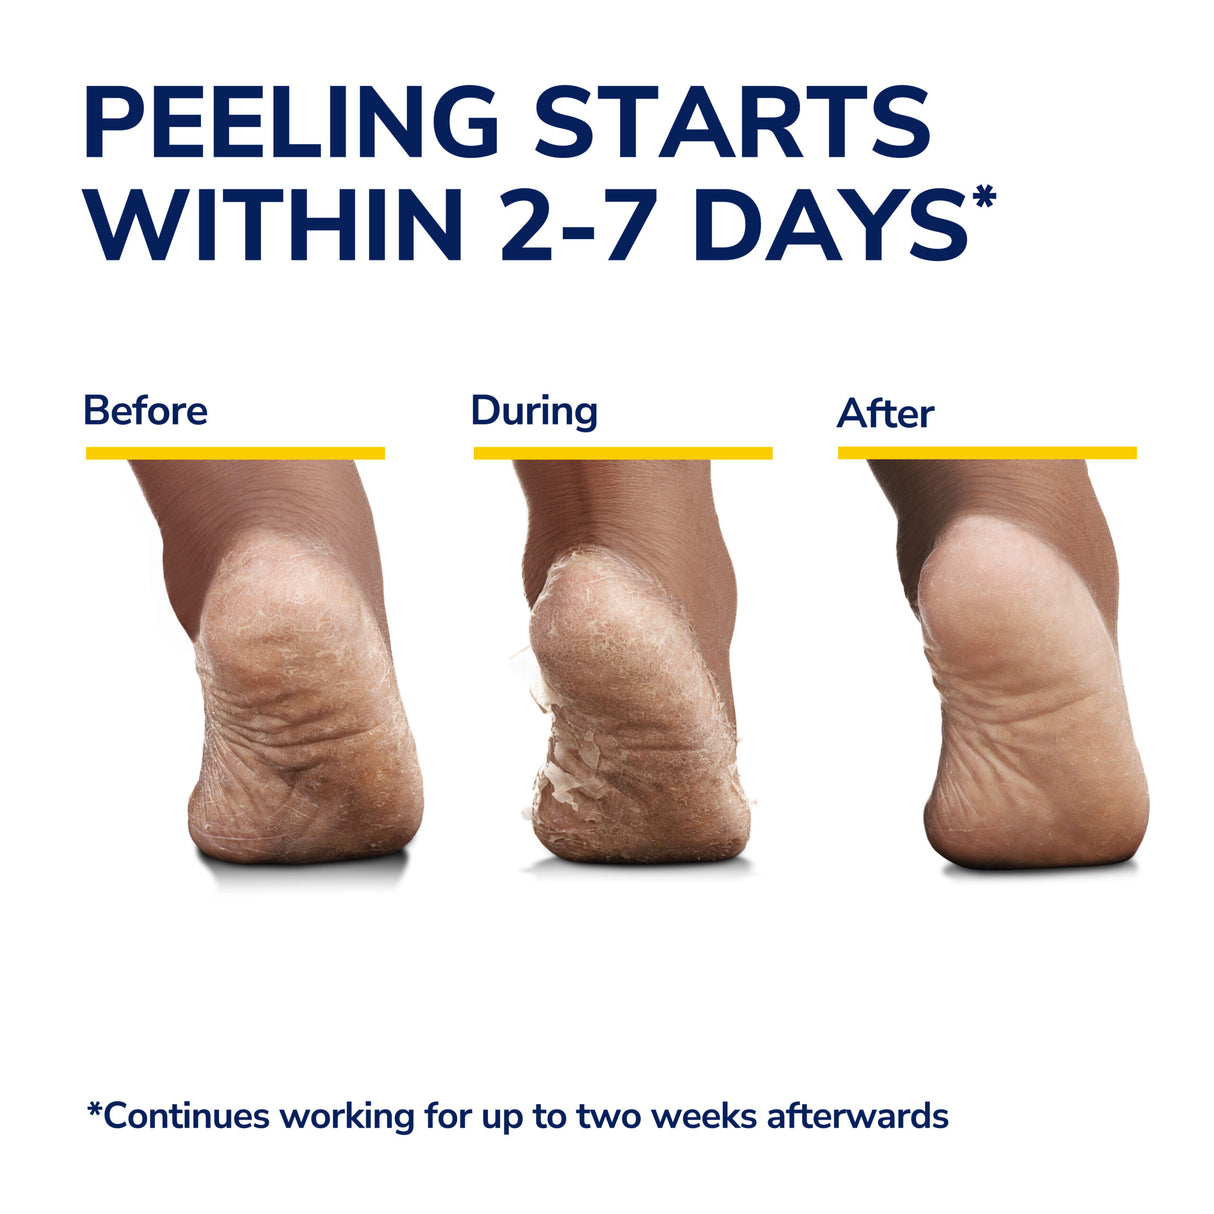 image of peeling starts within 2-7 days